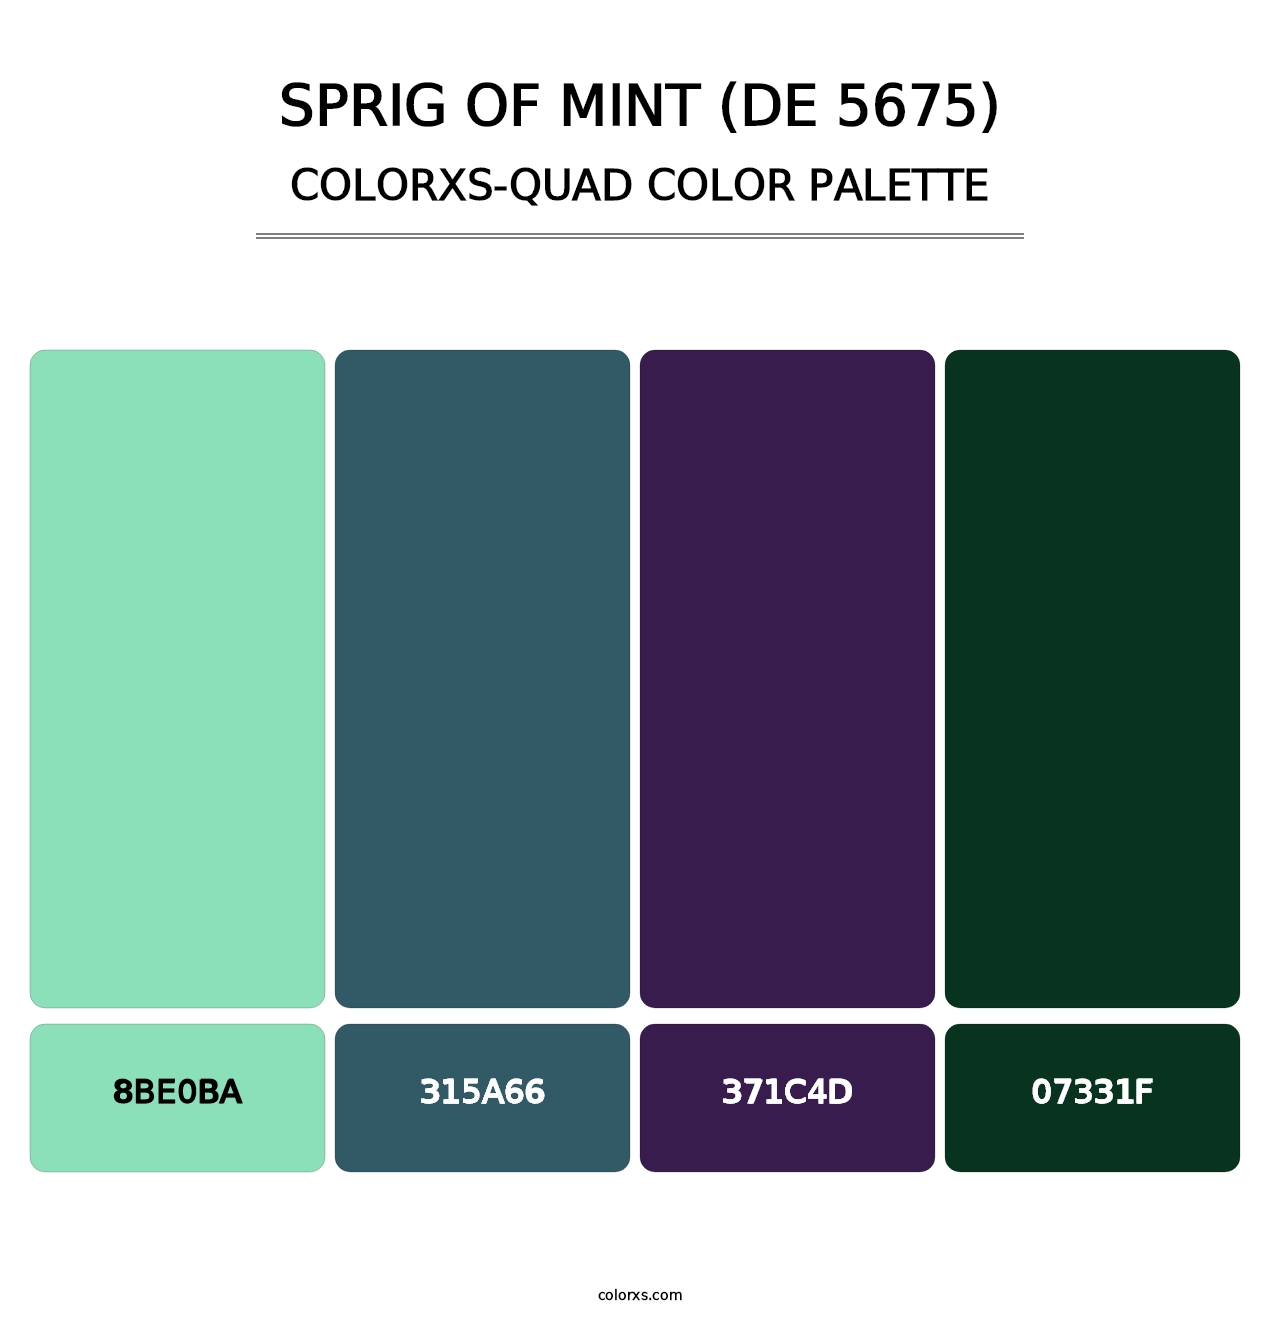 Sprig of Mint (DE 5675) - Colorxs Quad Palette